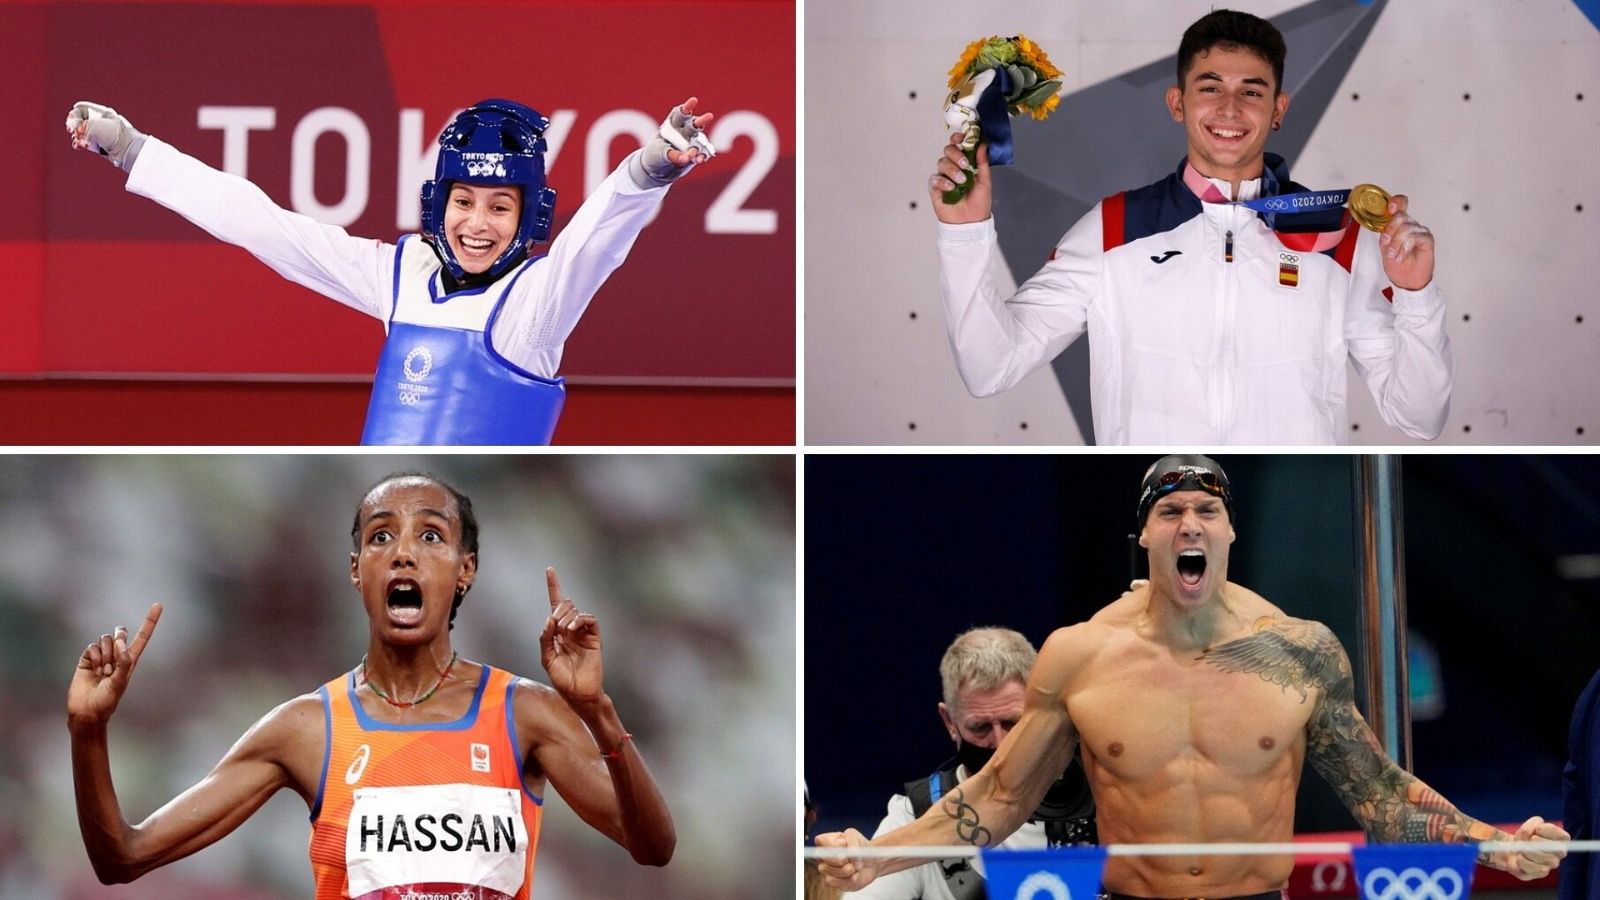 Cerezo, Dressel, Ginés y Hassan durante los Juegos Olímpicos